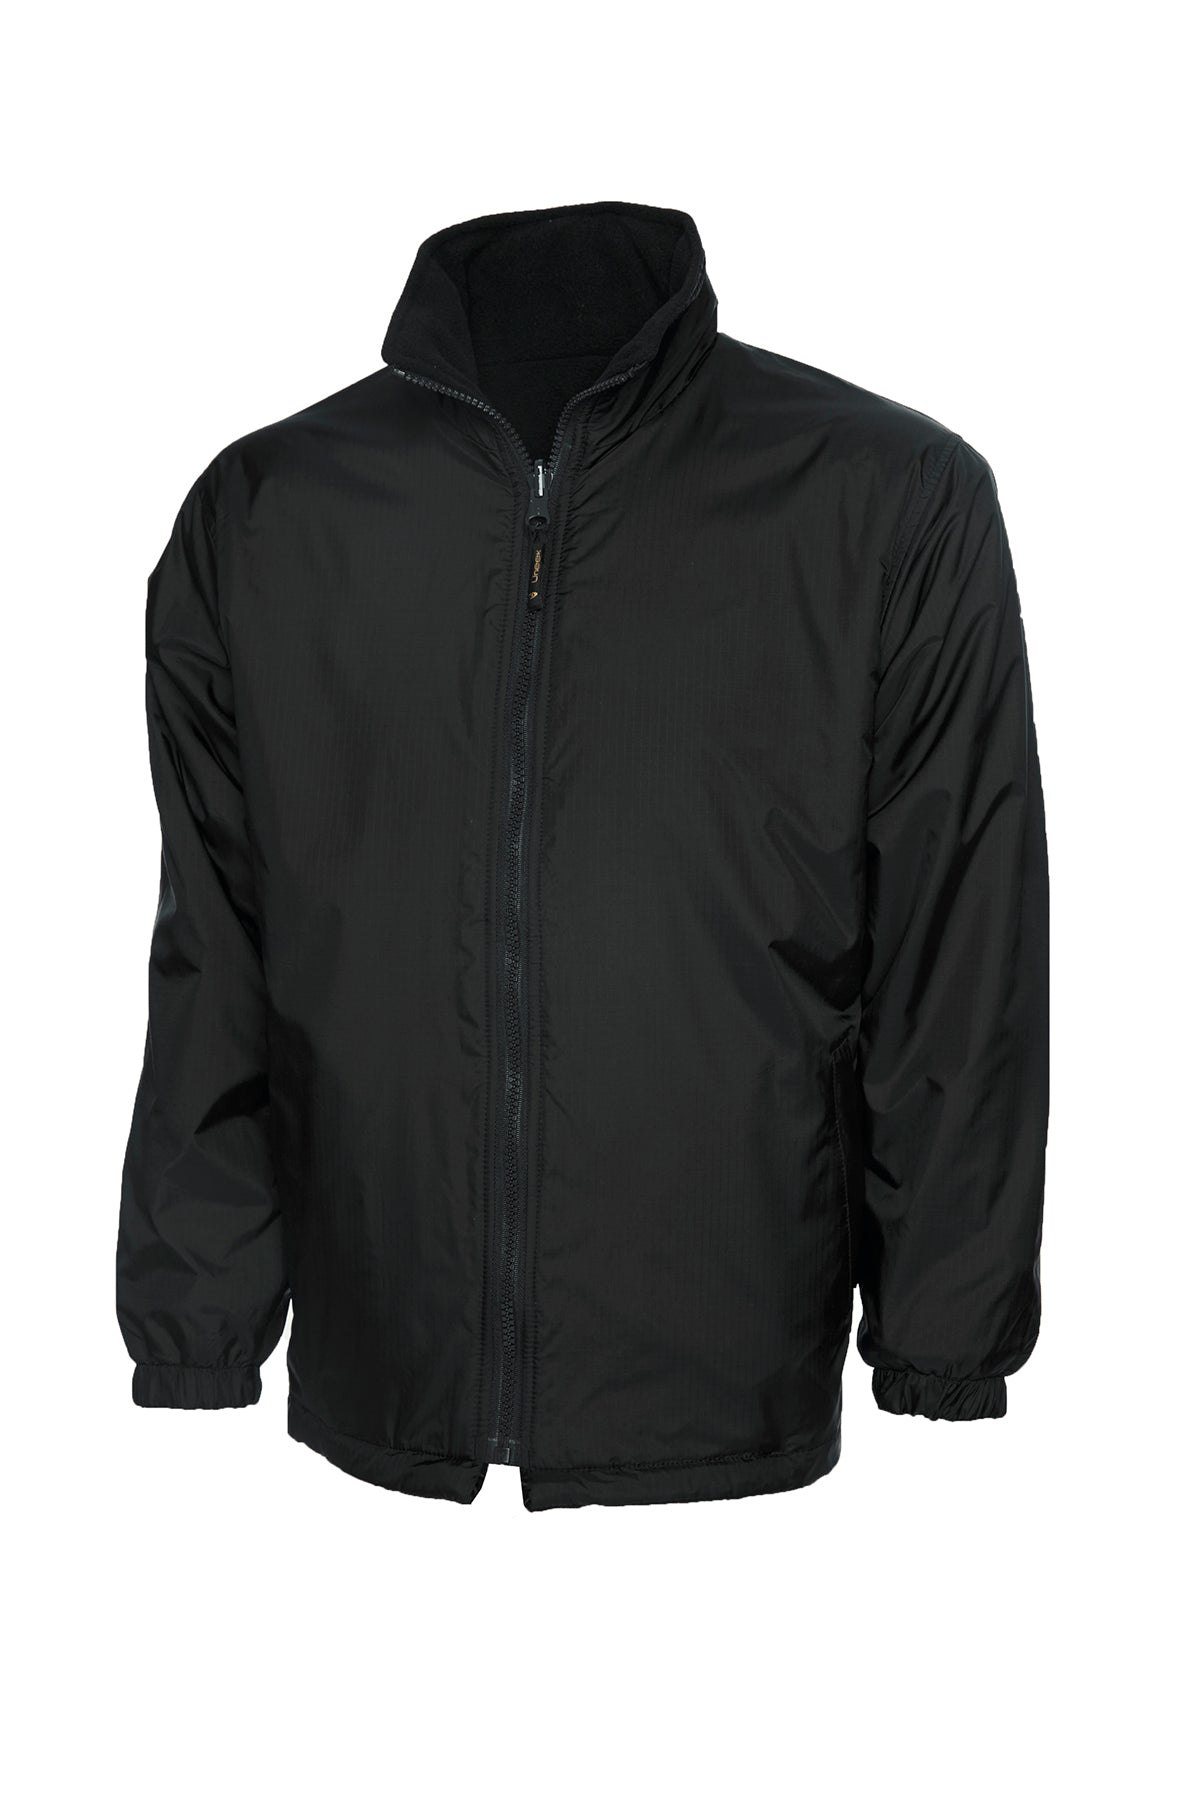 Uneek Childrens Reversible Fleece Jacket UC606 - Black